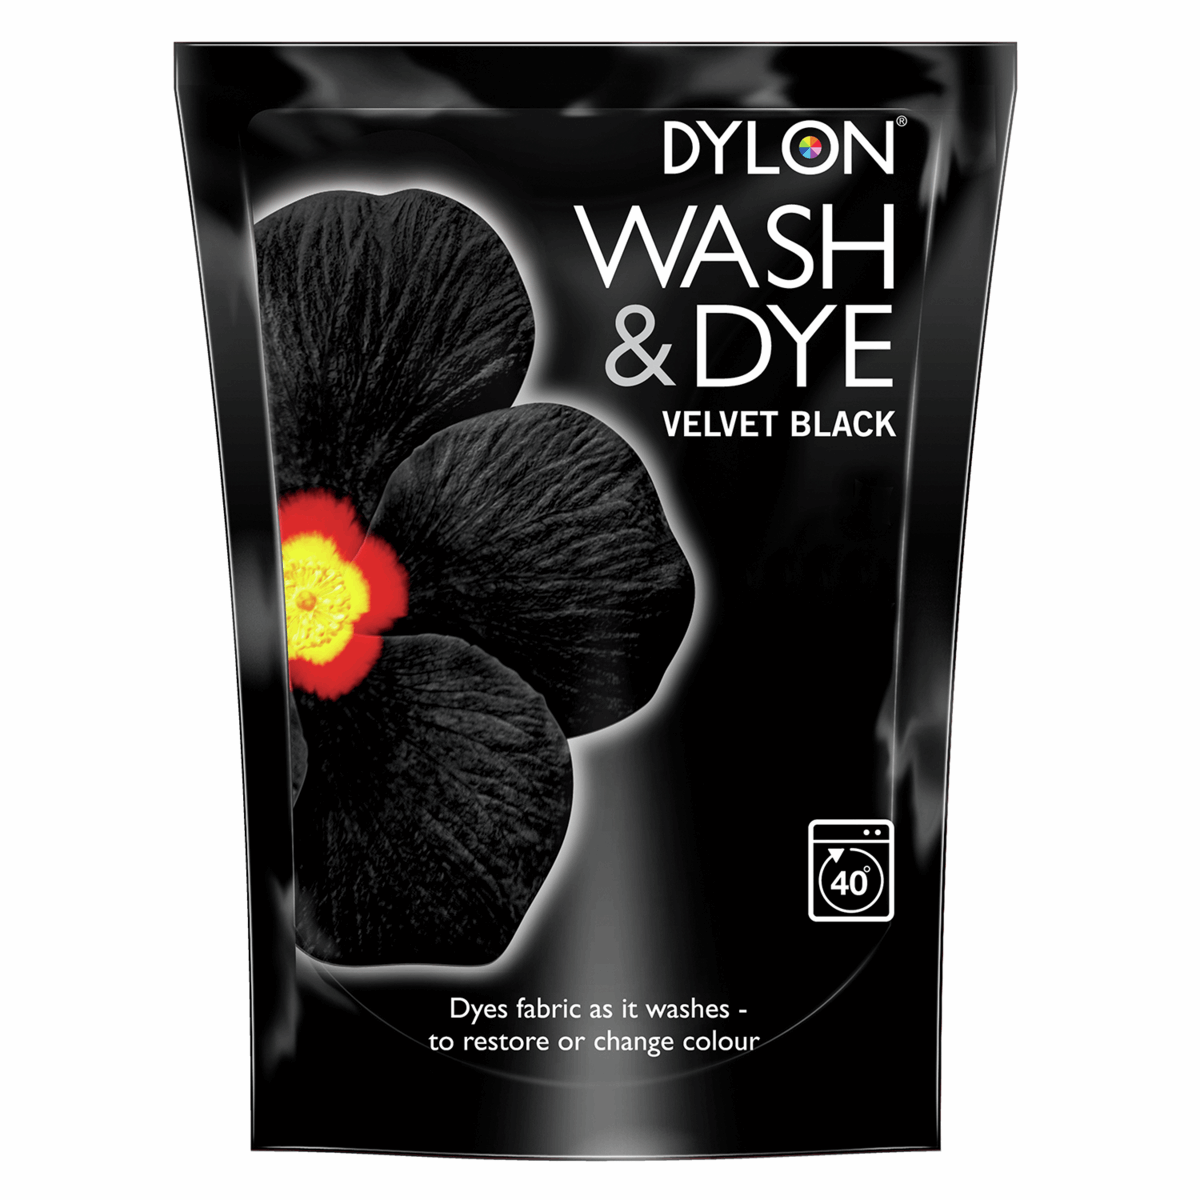 Fabric Dye Dylon 